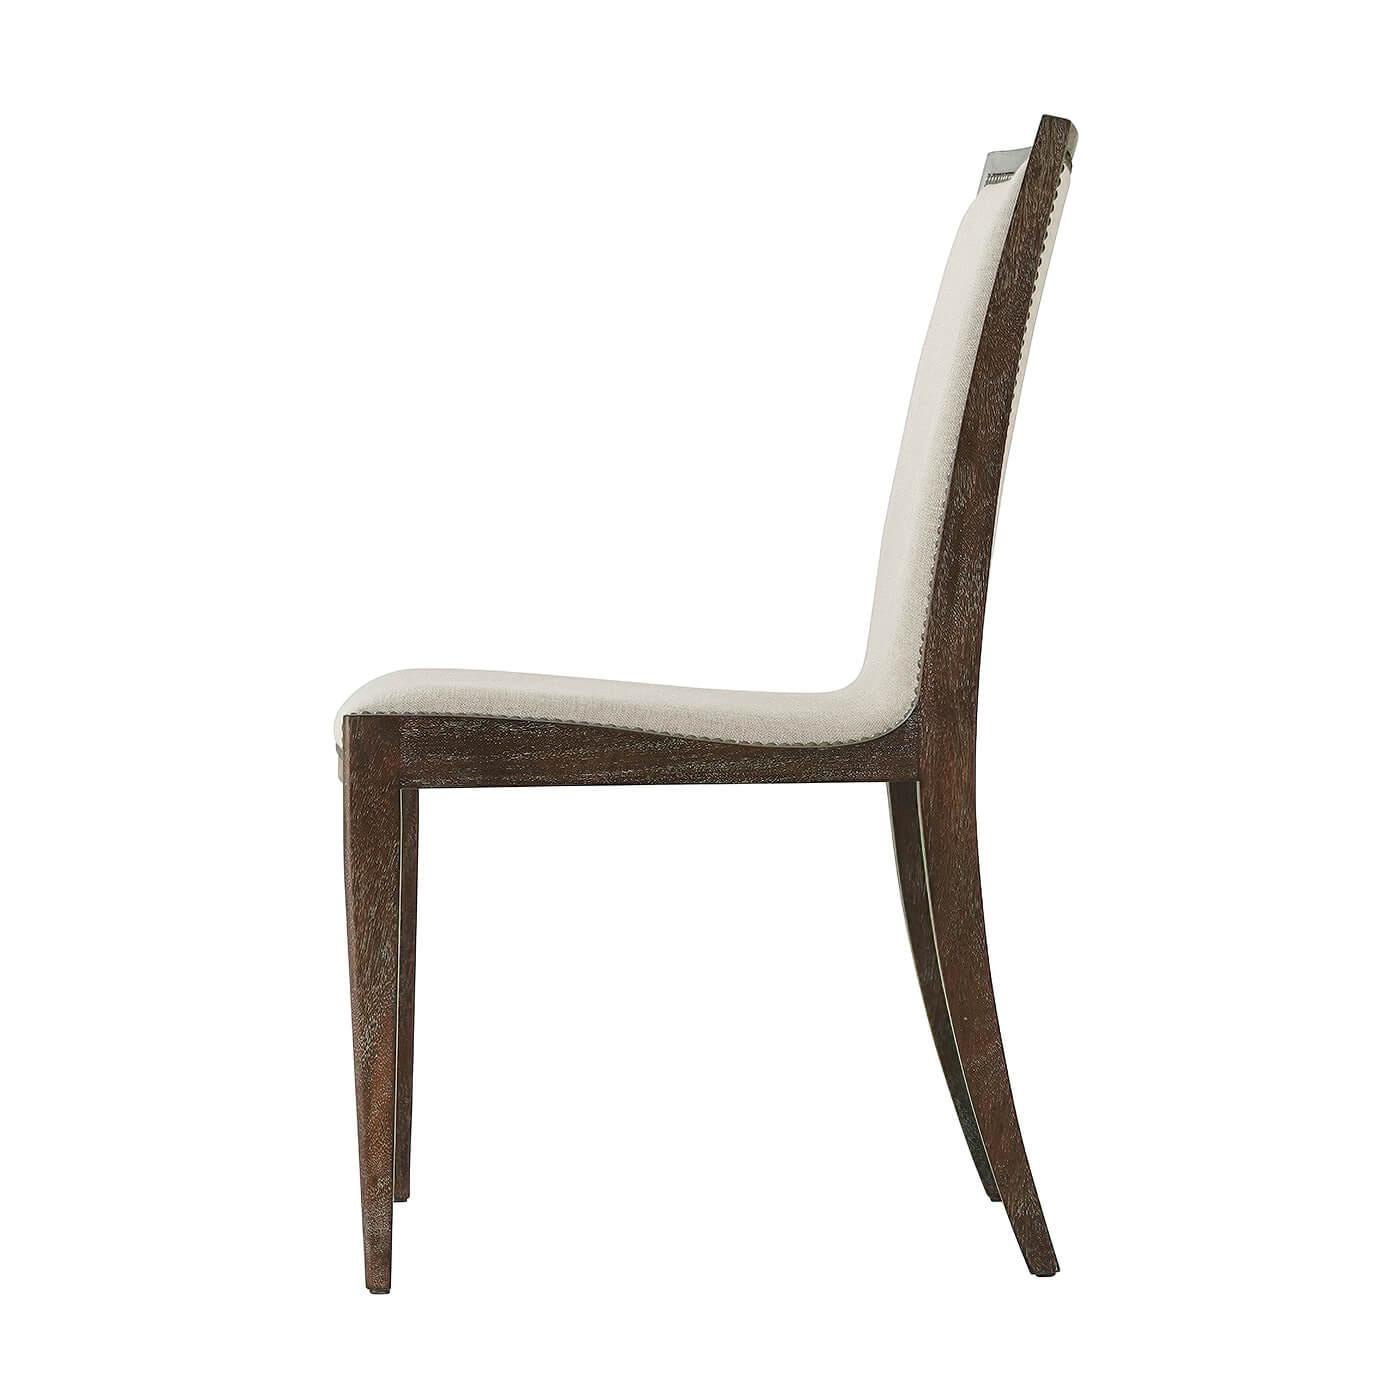 Mid-Century Modern Stil Mahagoni Mesquite Finish Esstisch Stuhl mit einem geschwungenen gepolsterten Sitz und Rücken, iin Creme Leder und Haferflocken Leinen, fertig mit antiken Stahl Nagelkopf trimmen.
Jedes Hautbild hat natürliche